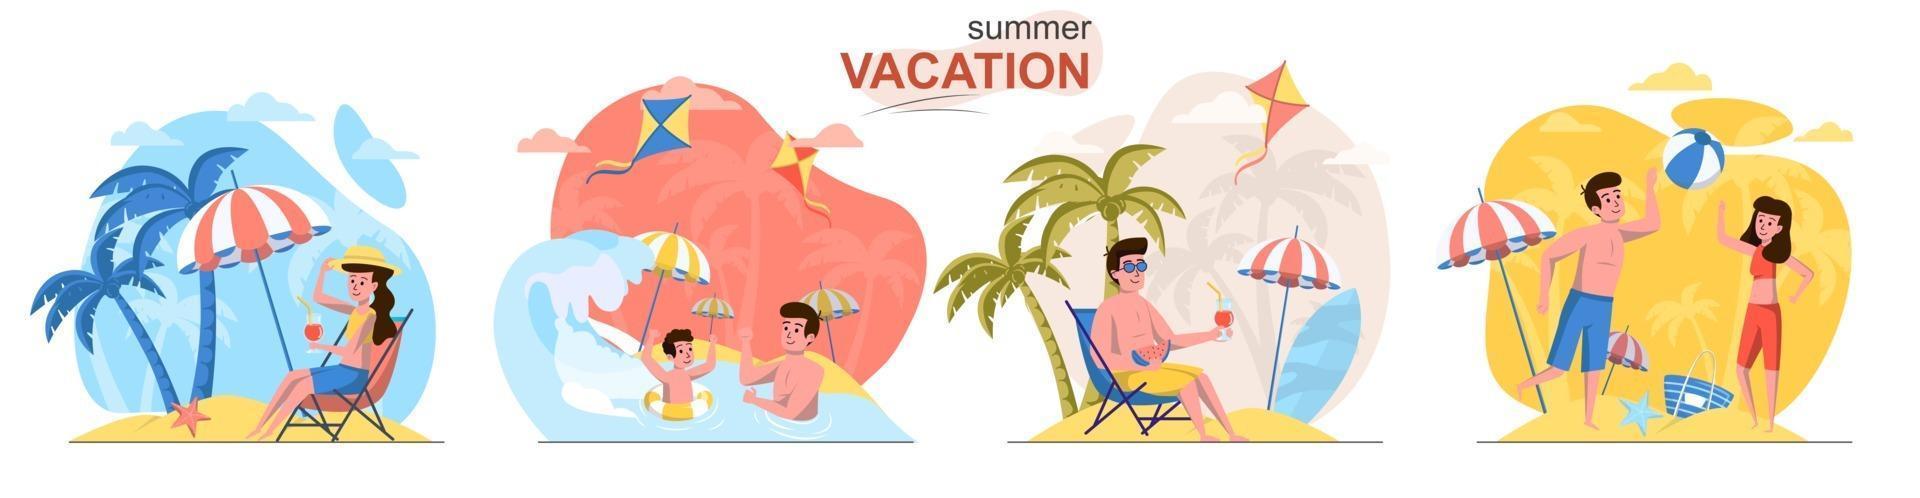 conjunto de escenas de concepto de diseño plano de vacaciones de verano vector